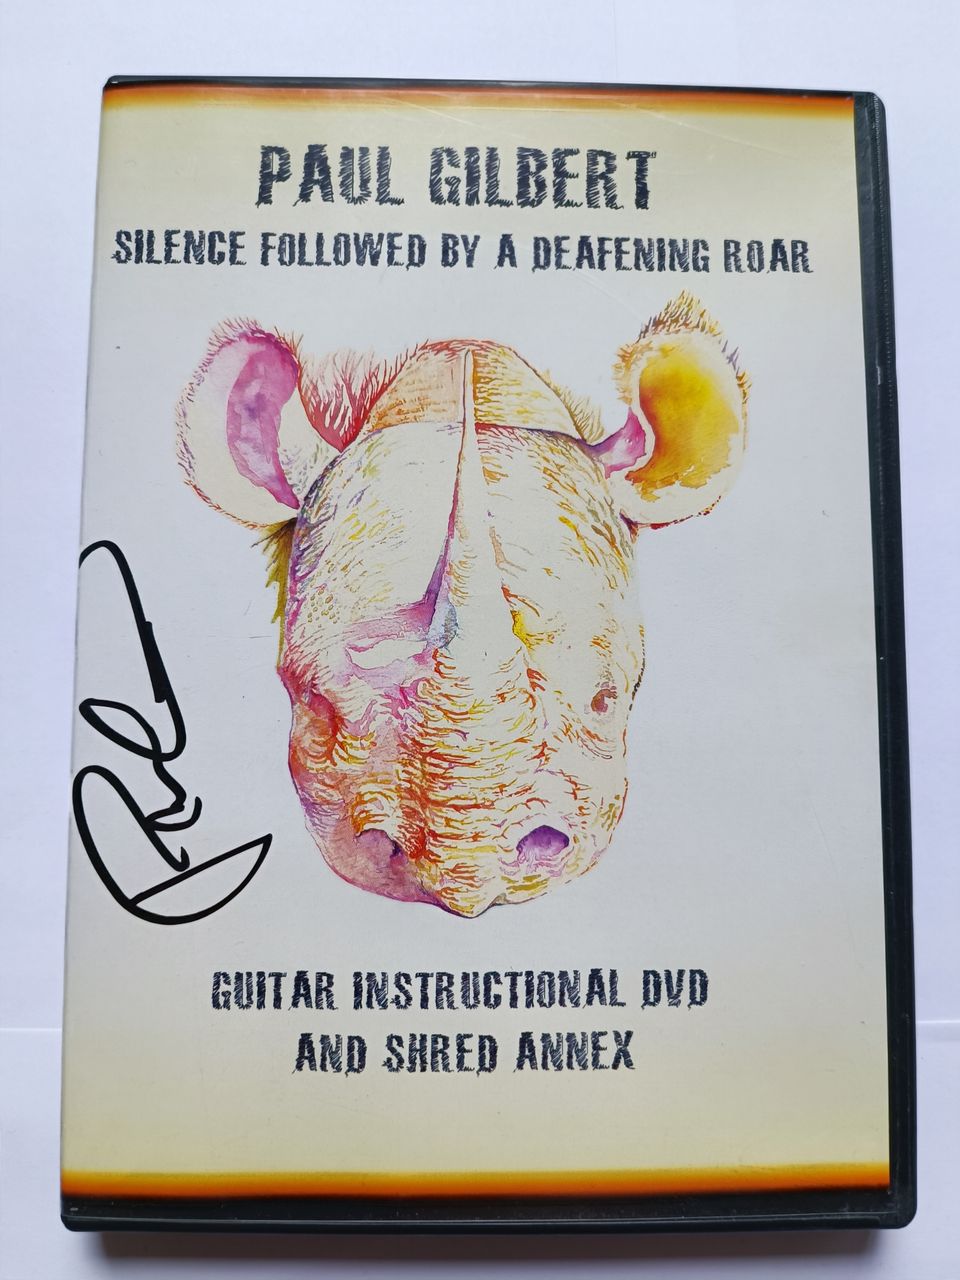 Paul Gilbert opetus DVD Nimmarilla